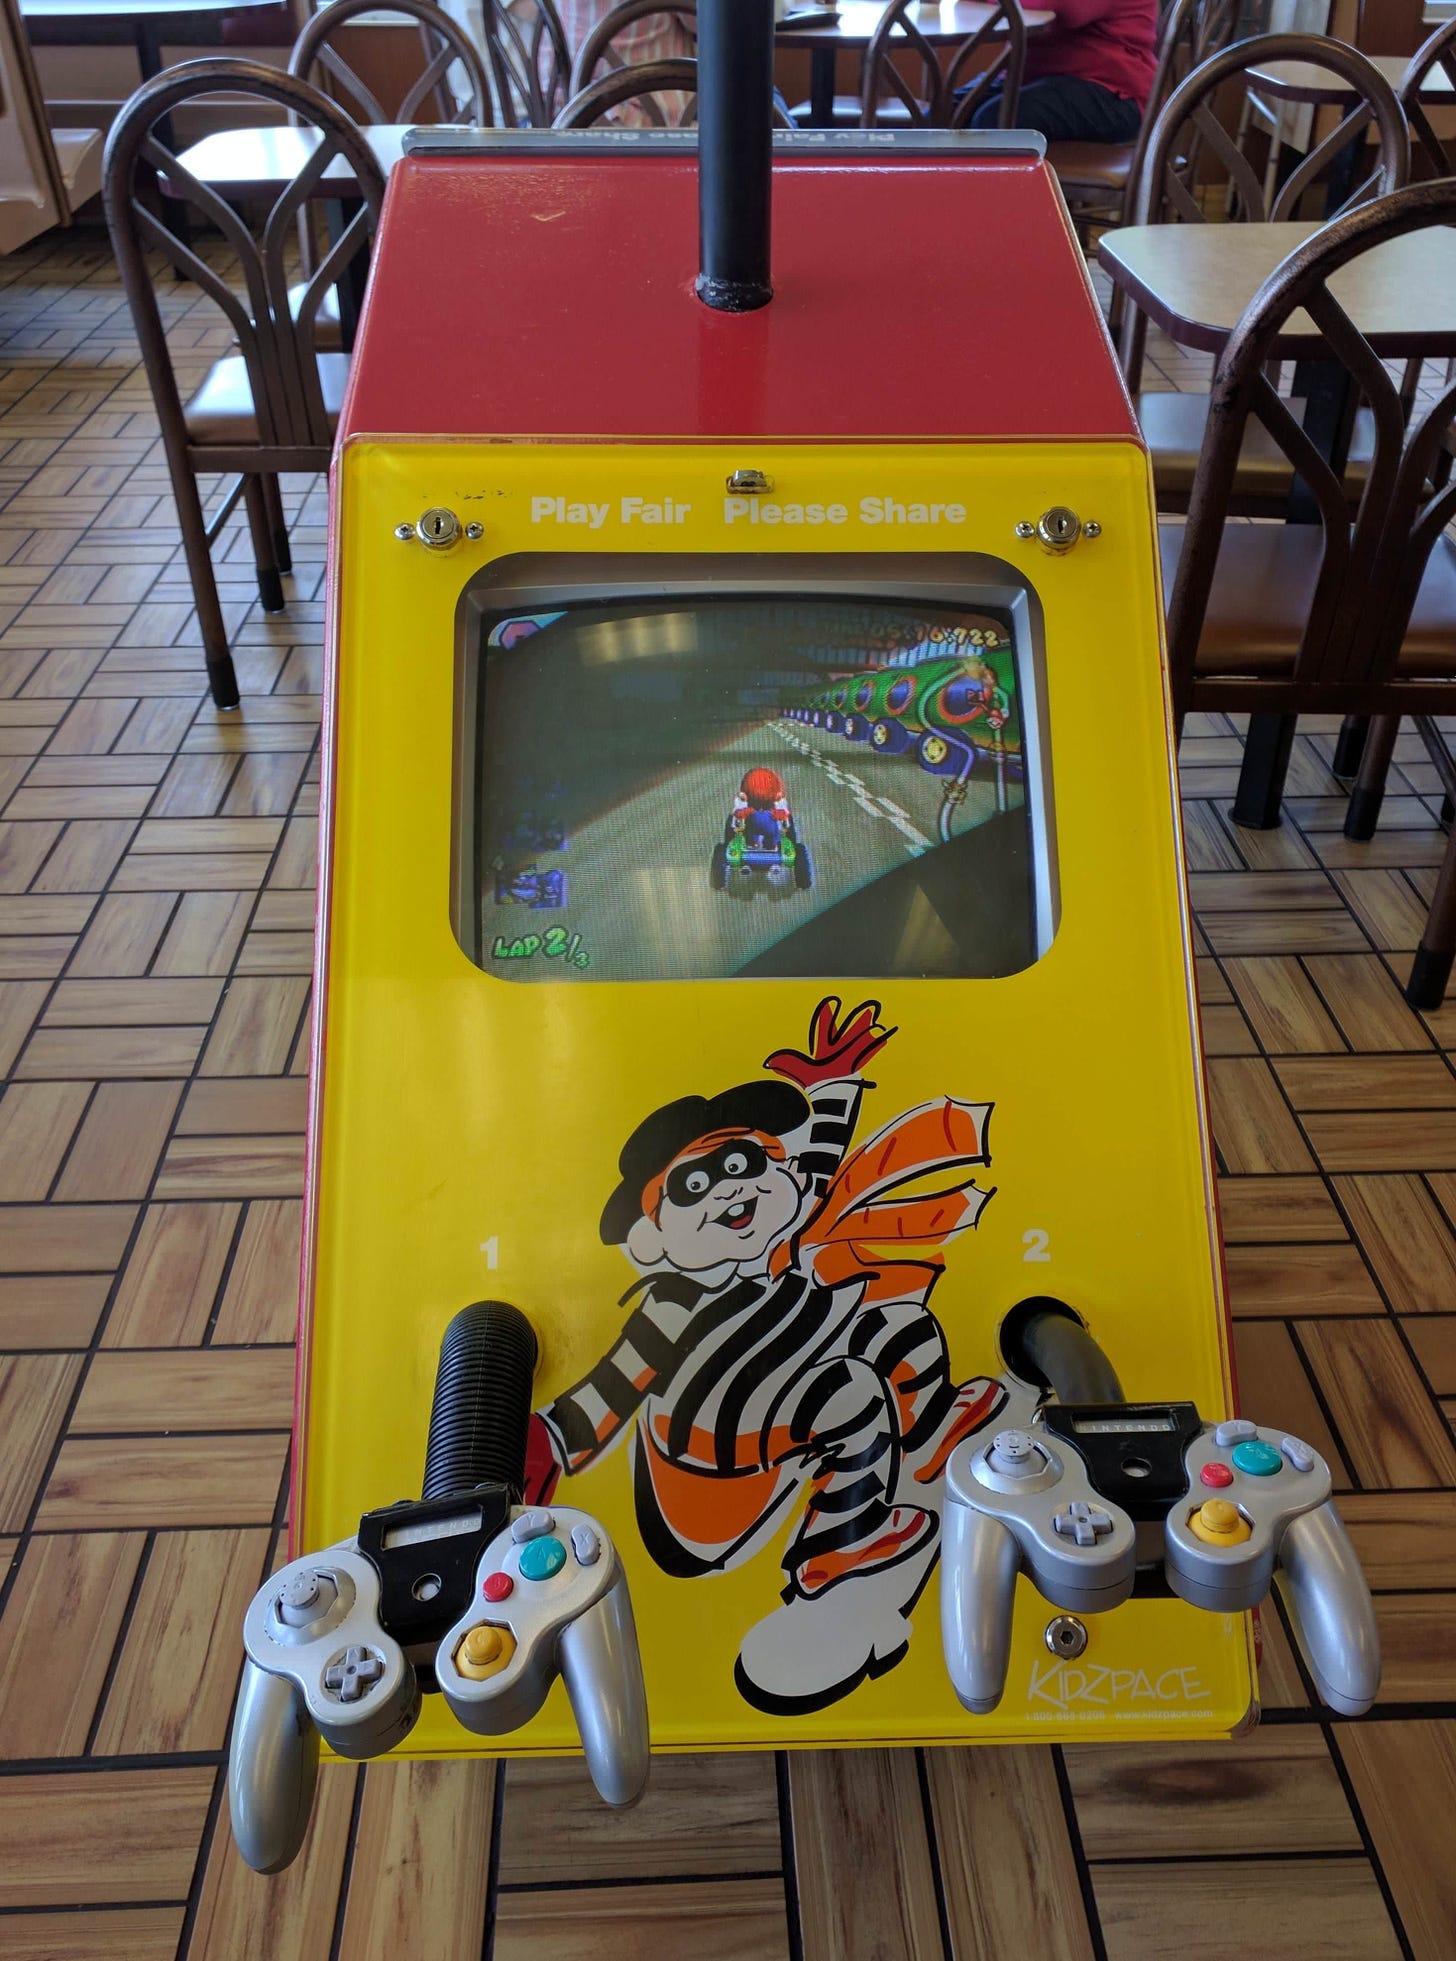 Gamecube kiosk still running in McDonald's : r/nintendo